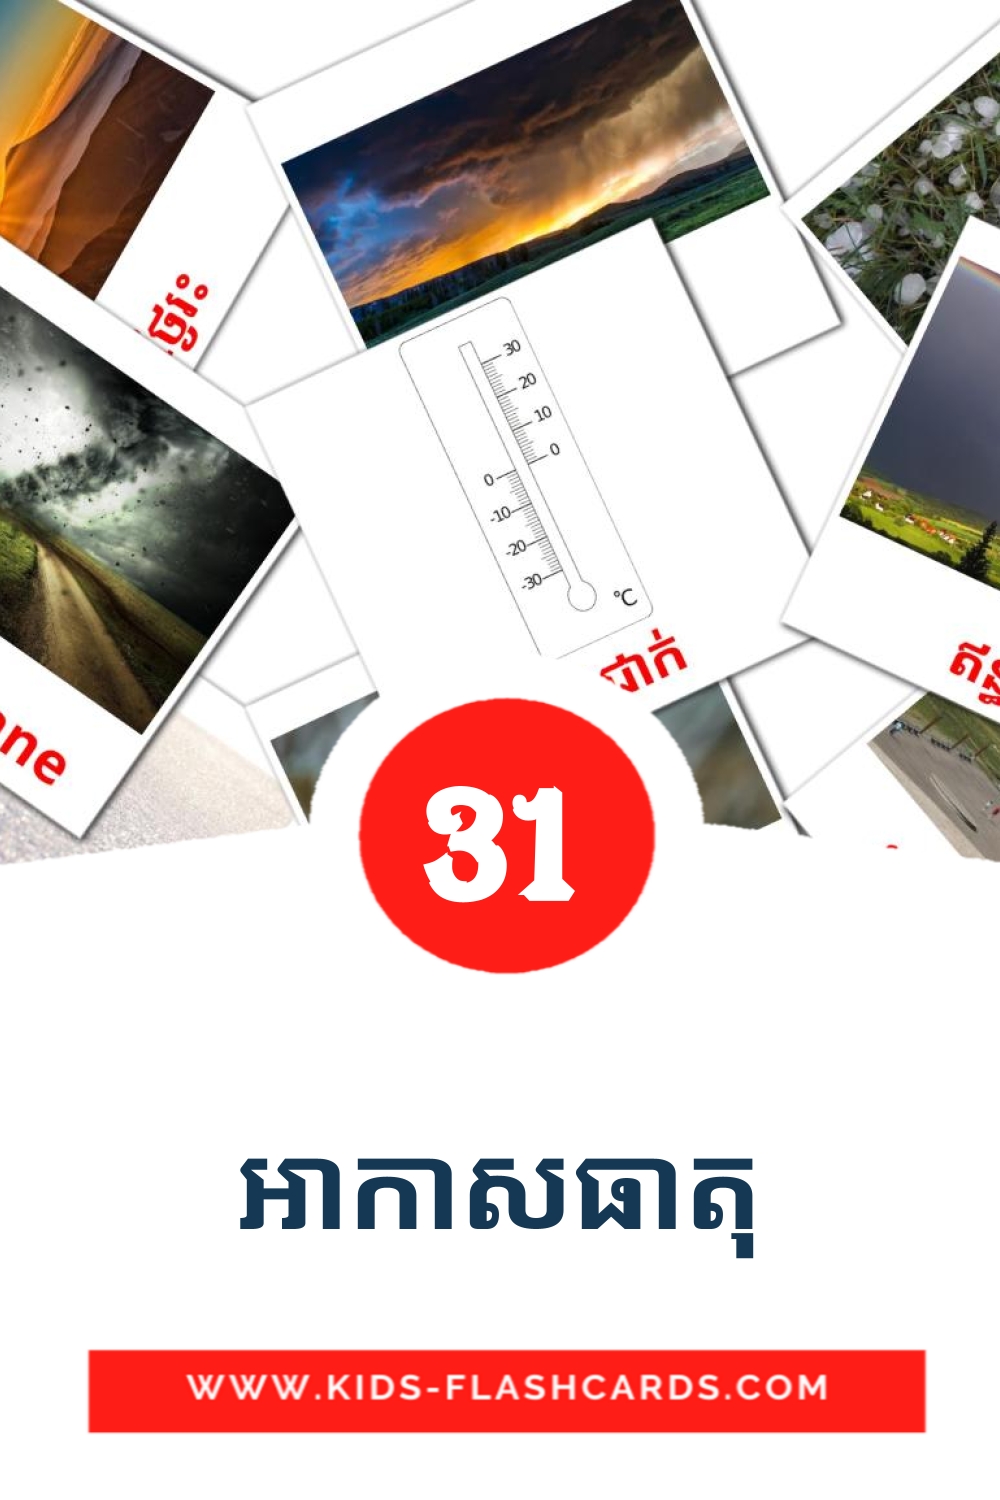 31 carte illustrate di អាកាសធាតុ per la scuola materna in khmer